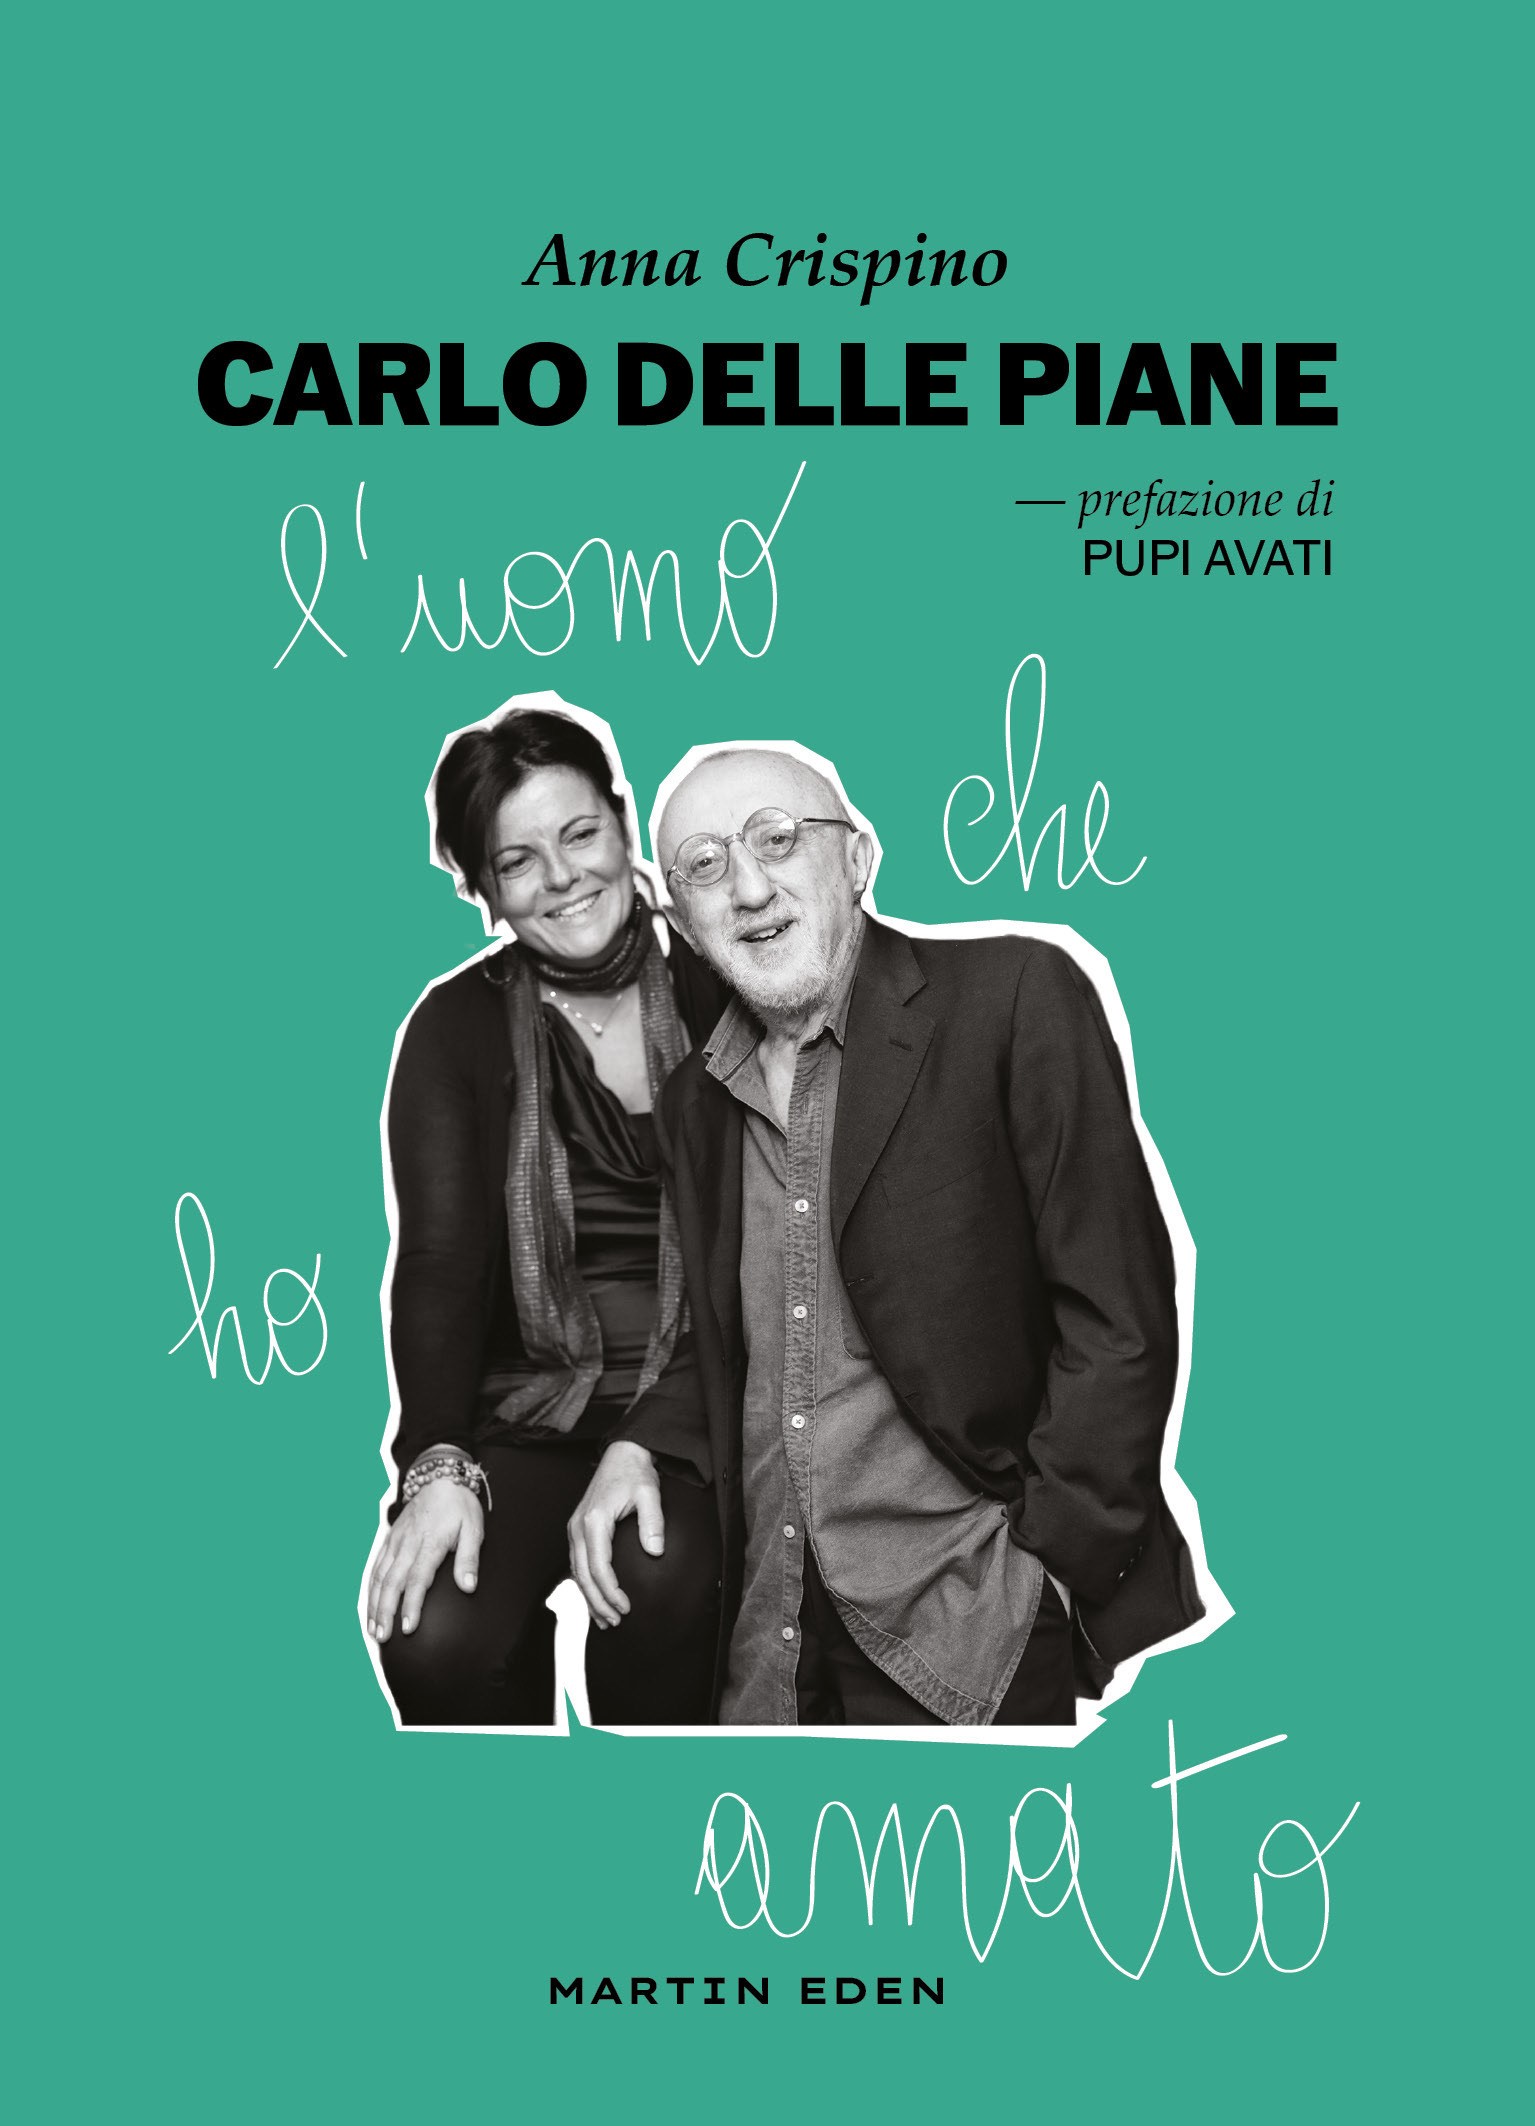 Prima presentazione di "Carlo Delle Piane", il libro di Anna Crispino: venerdì 27 ottobre